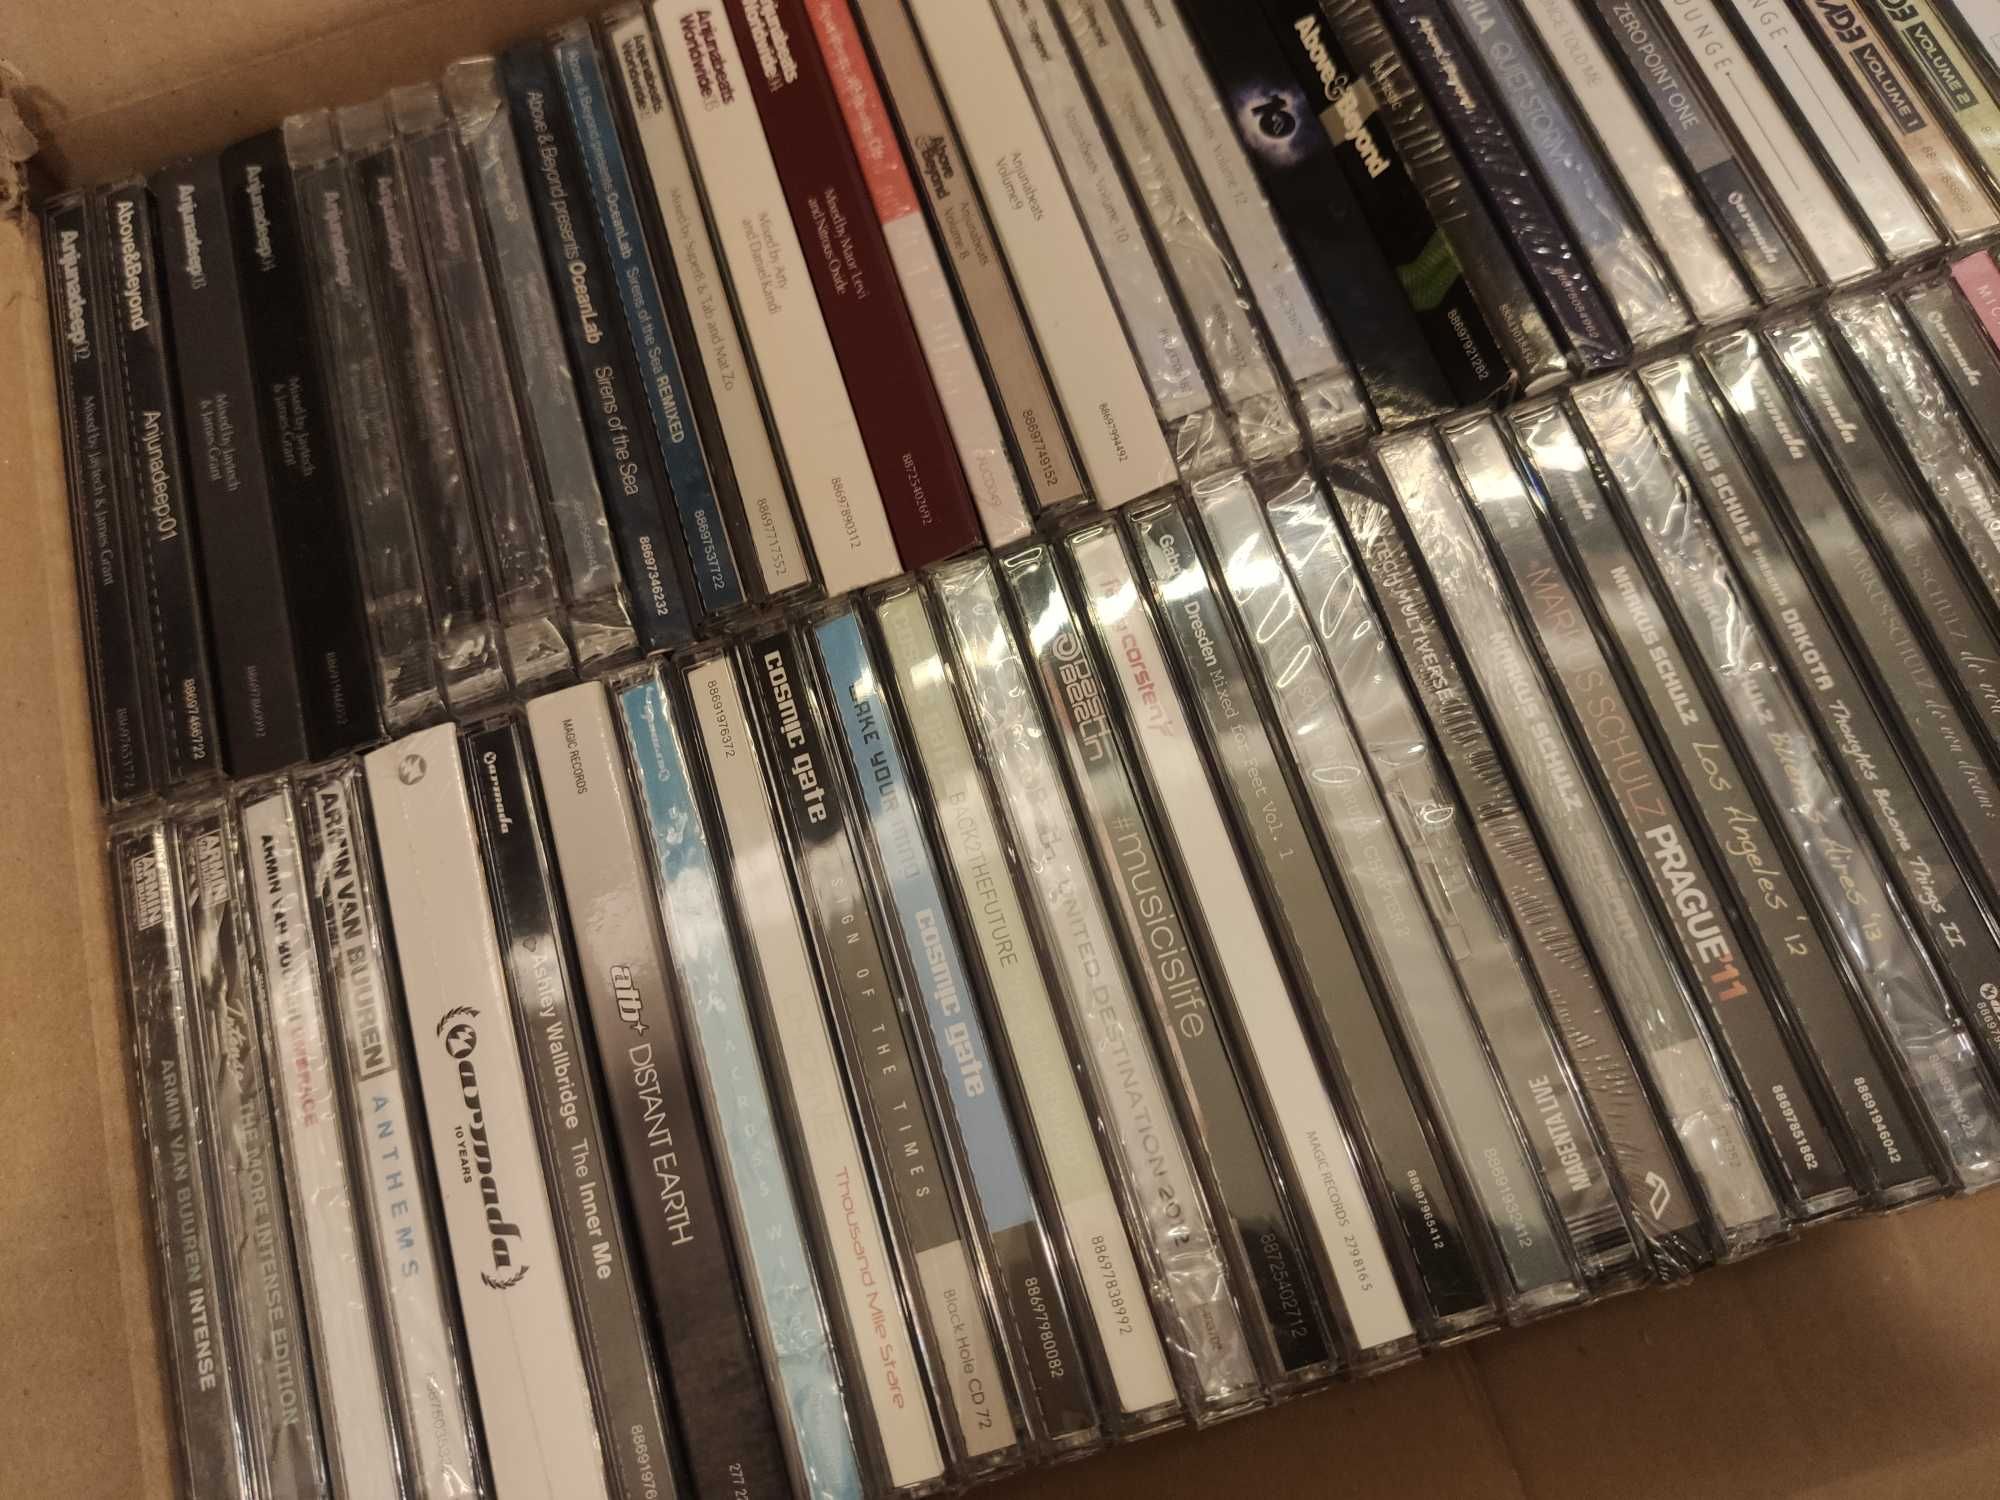 Kolekcja muzyki Trance, blisko 200 płyt CD, większość NOWYCH w folii